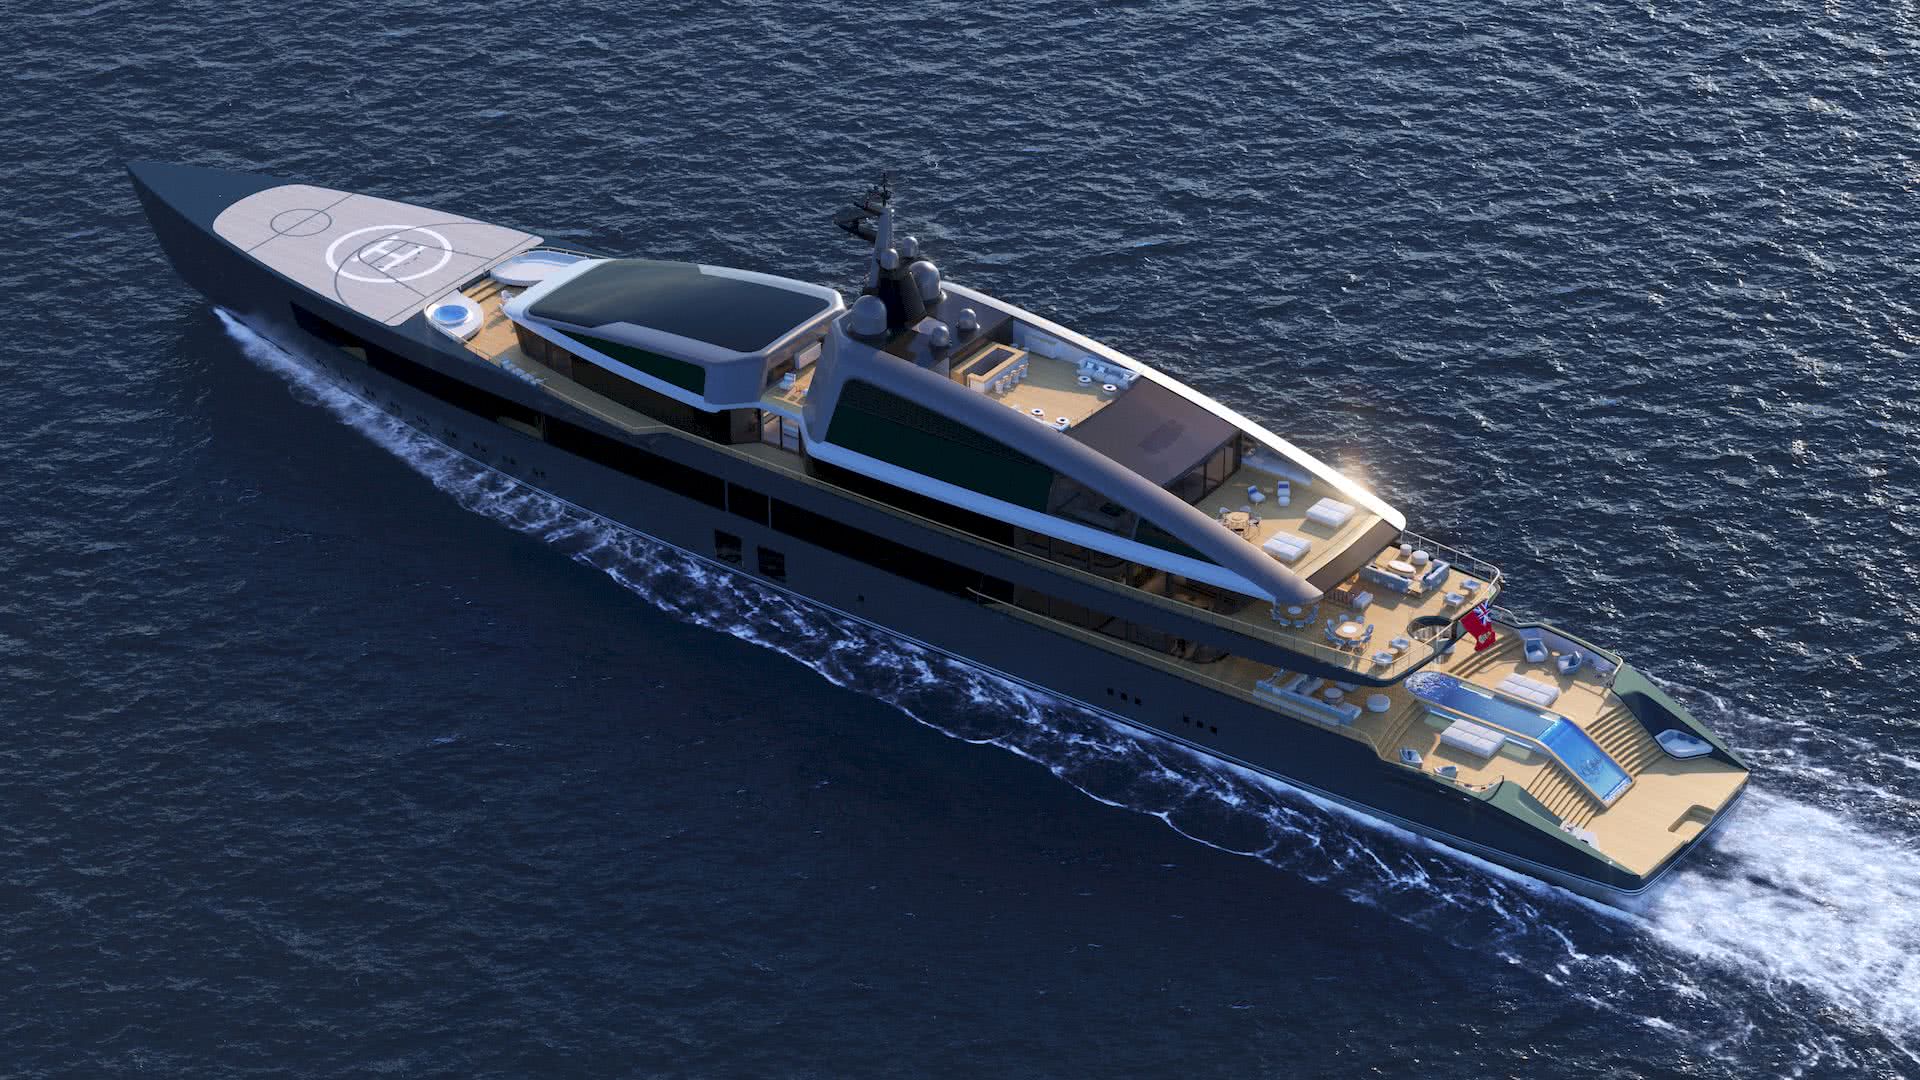 Motor Yacht NOW Piredda Partners